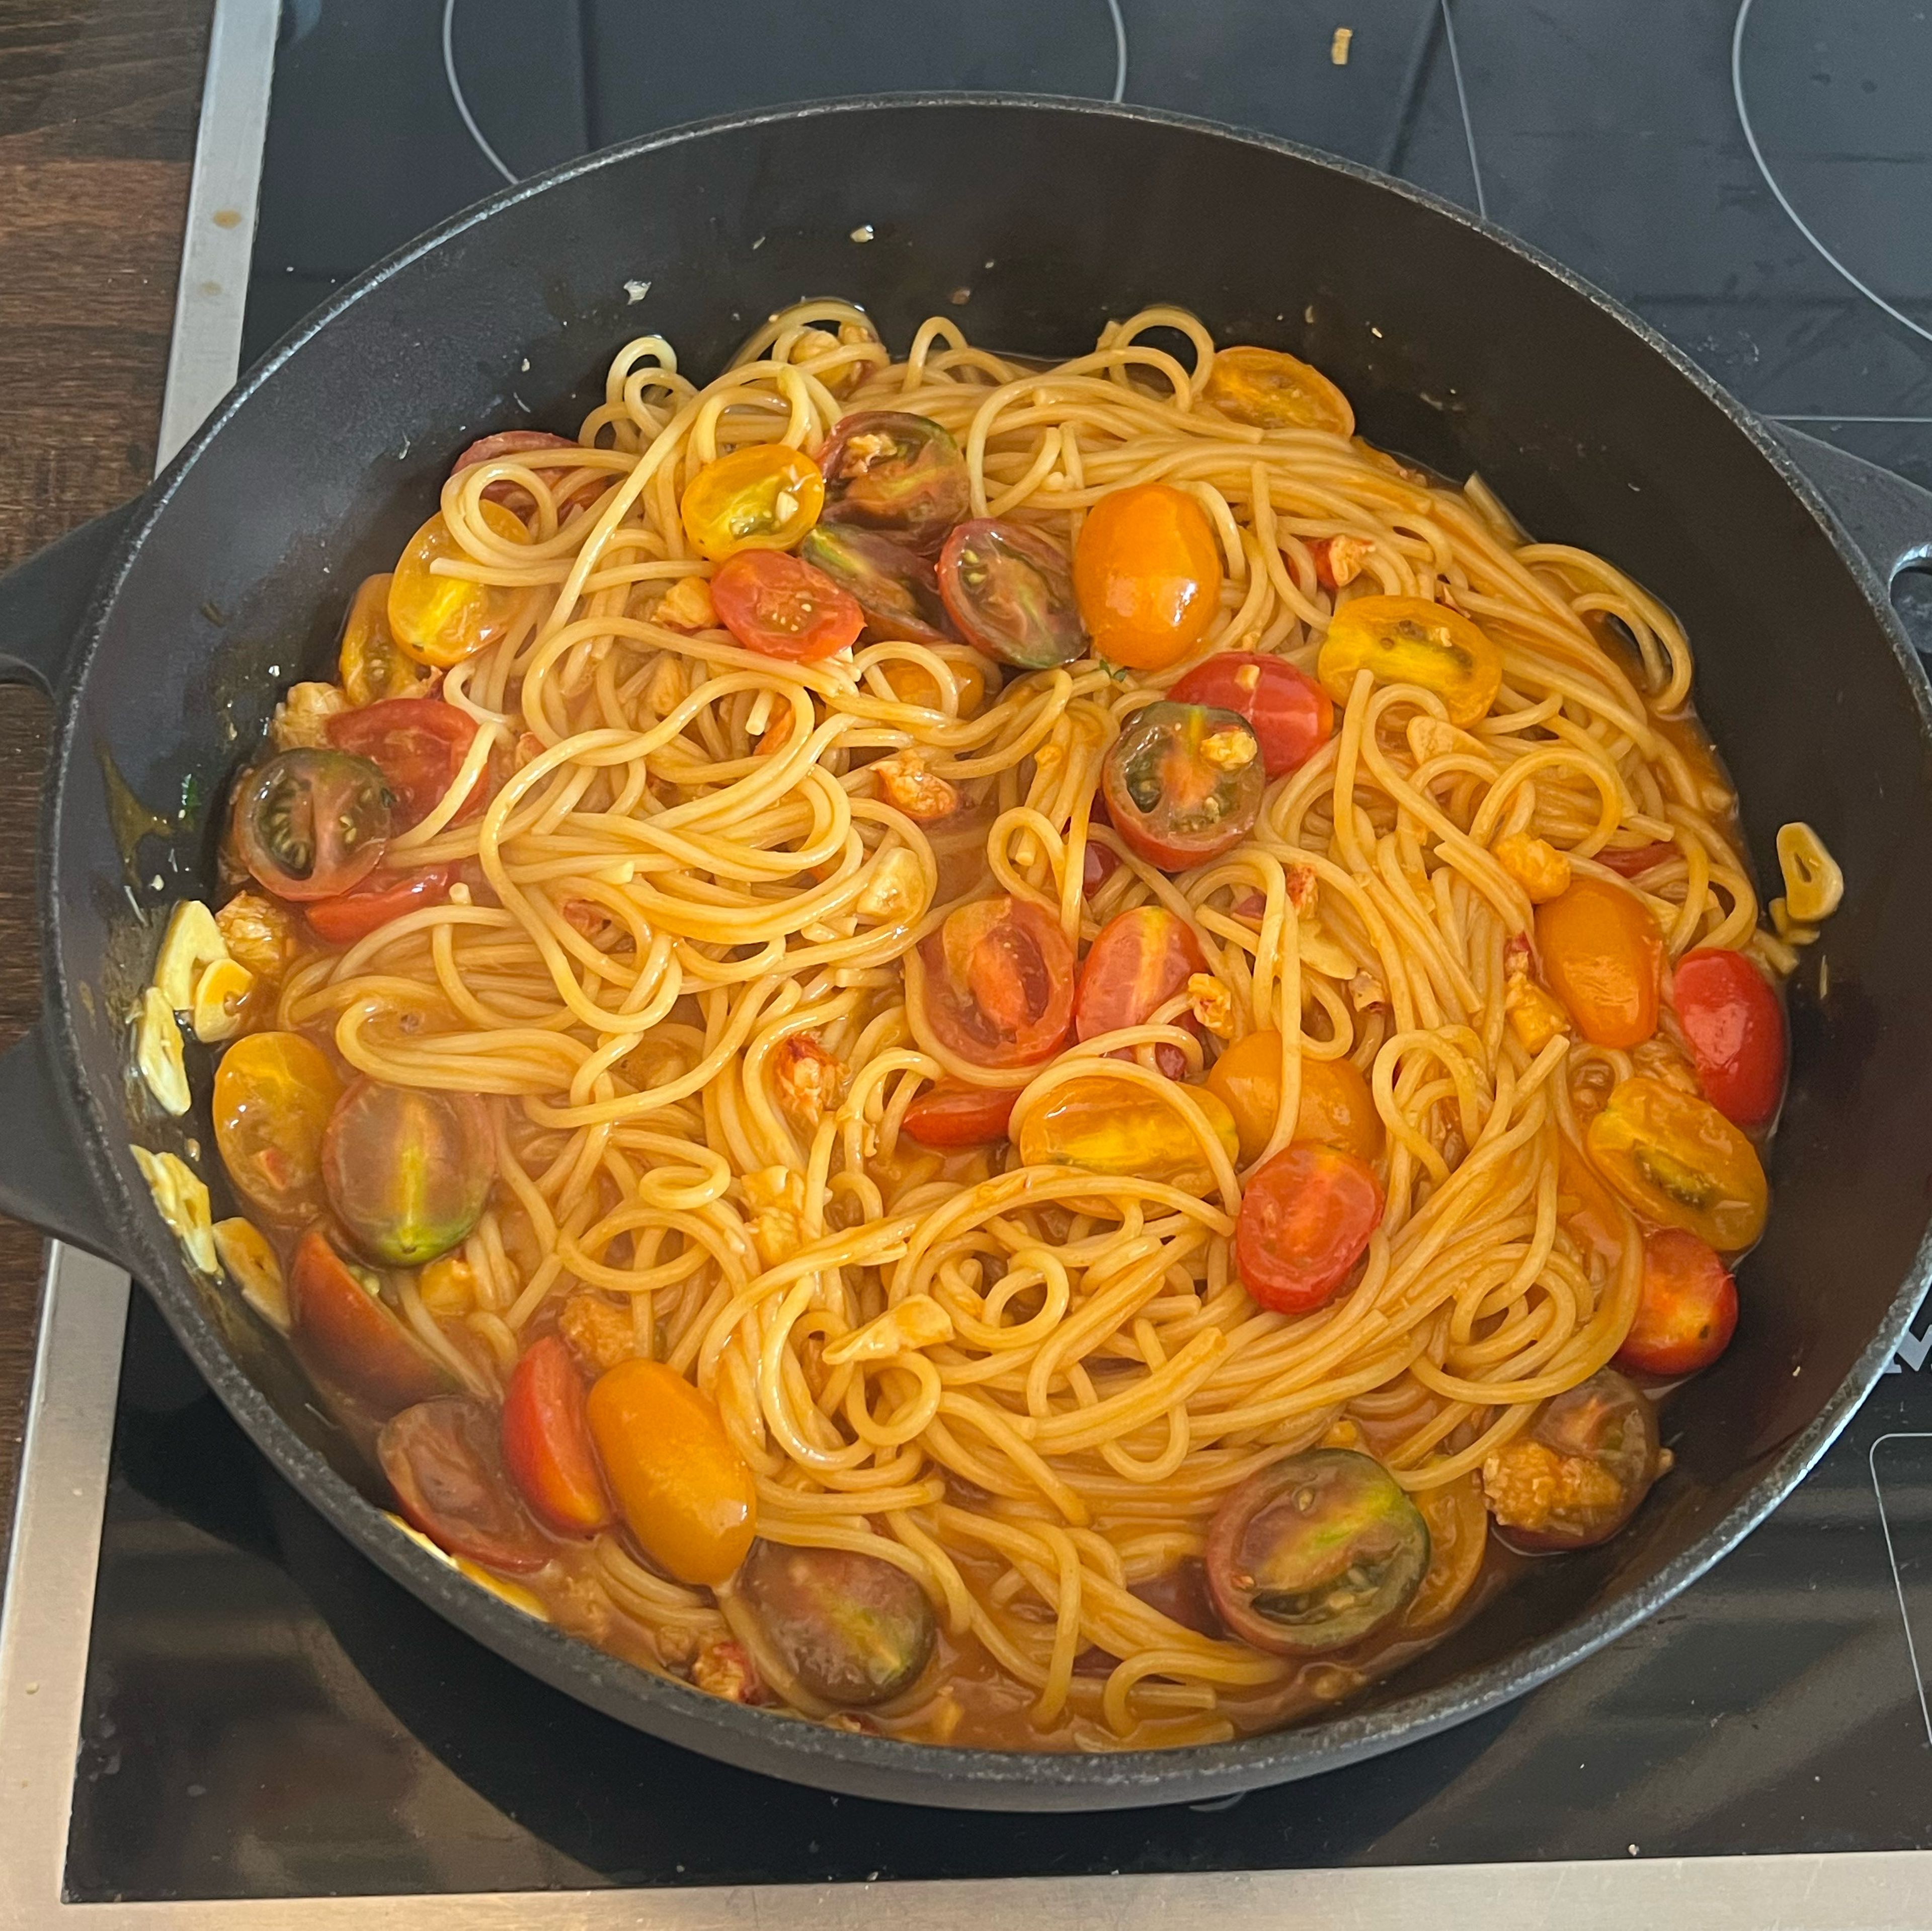 ANRICHTEN Knoblauch in ein wenig Olivenöl leicht andünsten. Hummersauce und Datteltomaten dazugeben. Die Sauce kurz aufkochen lassen. Das Hummerfleisch dazugeben und in der Sauce kurz erwärmen. Die gekochten Spaghetti zur Sauce geben, Petersilie beifügen und alles gut vermischen. Spaghetti auf vorgewärmten Tellern anrichten.